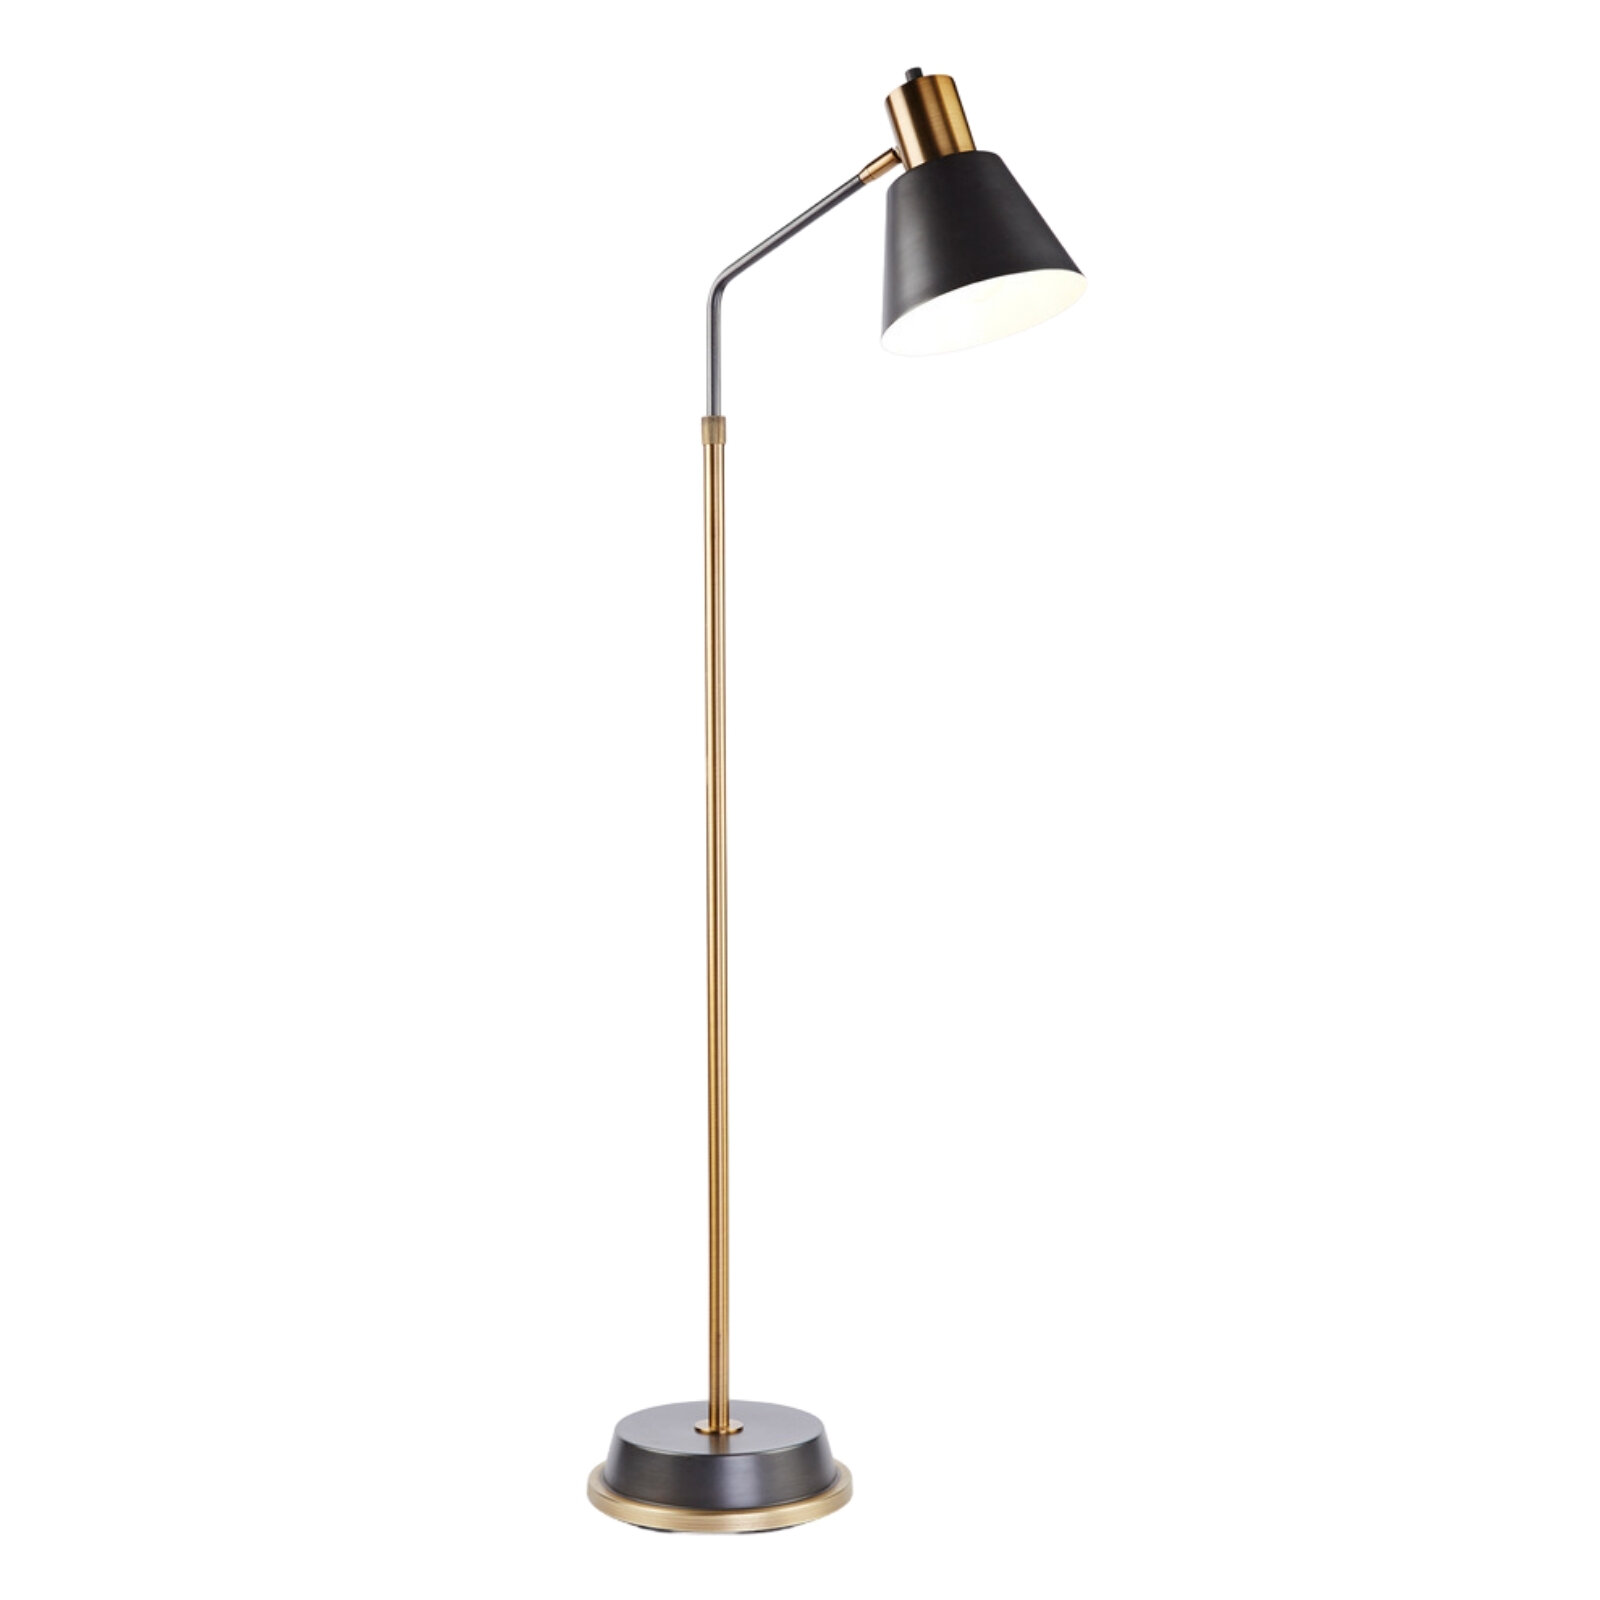 Crane Floor Lamp, CB2, $149